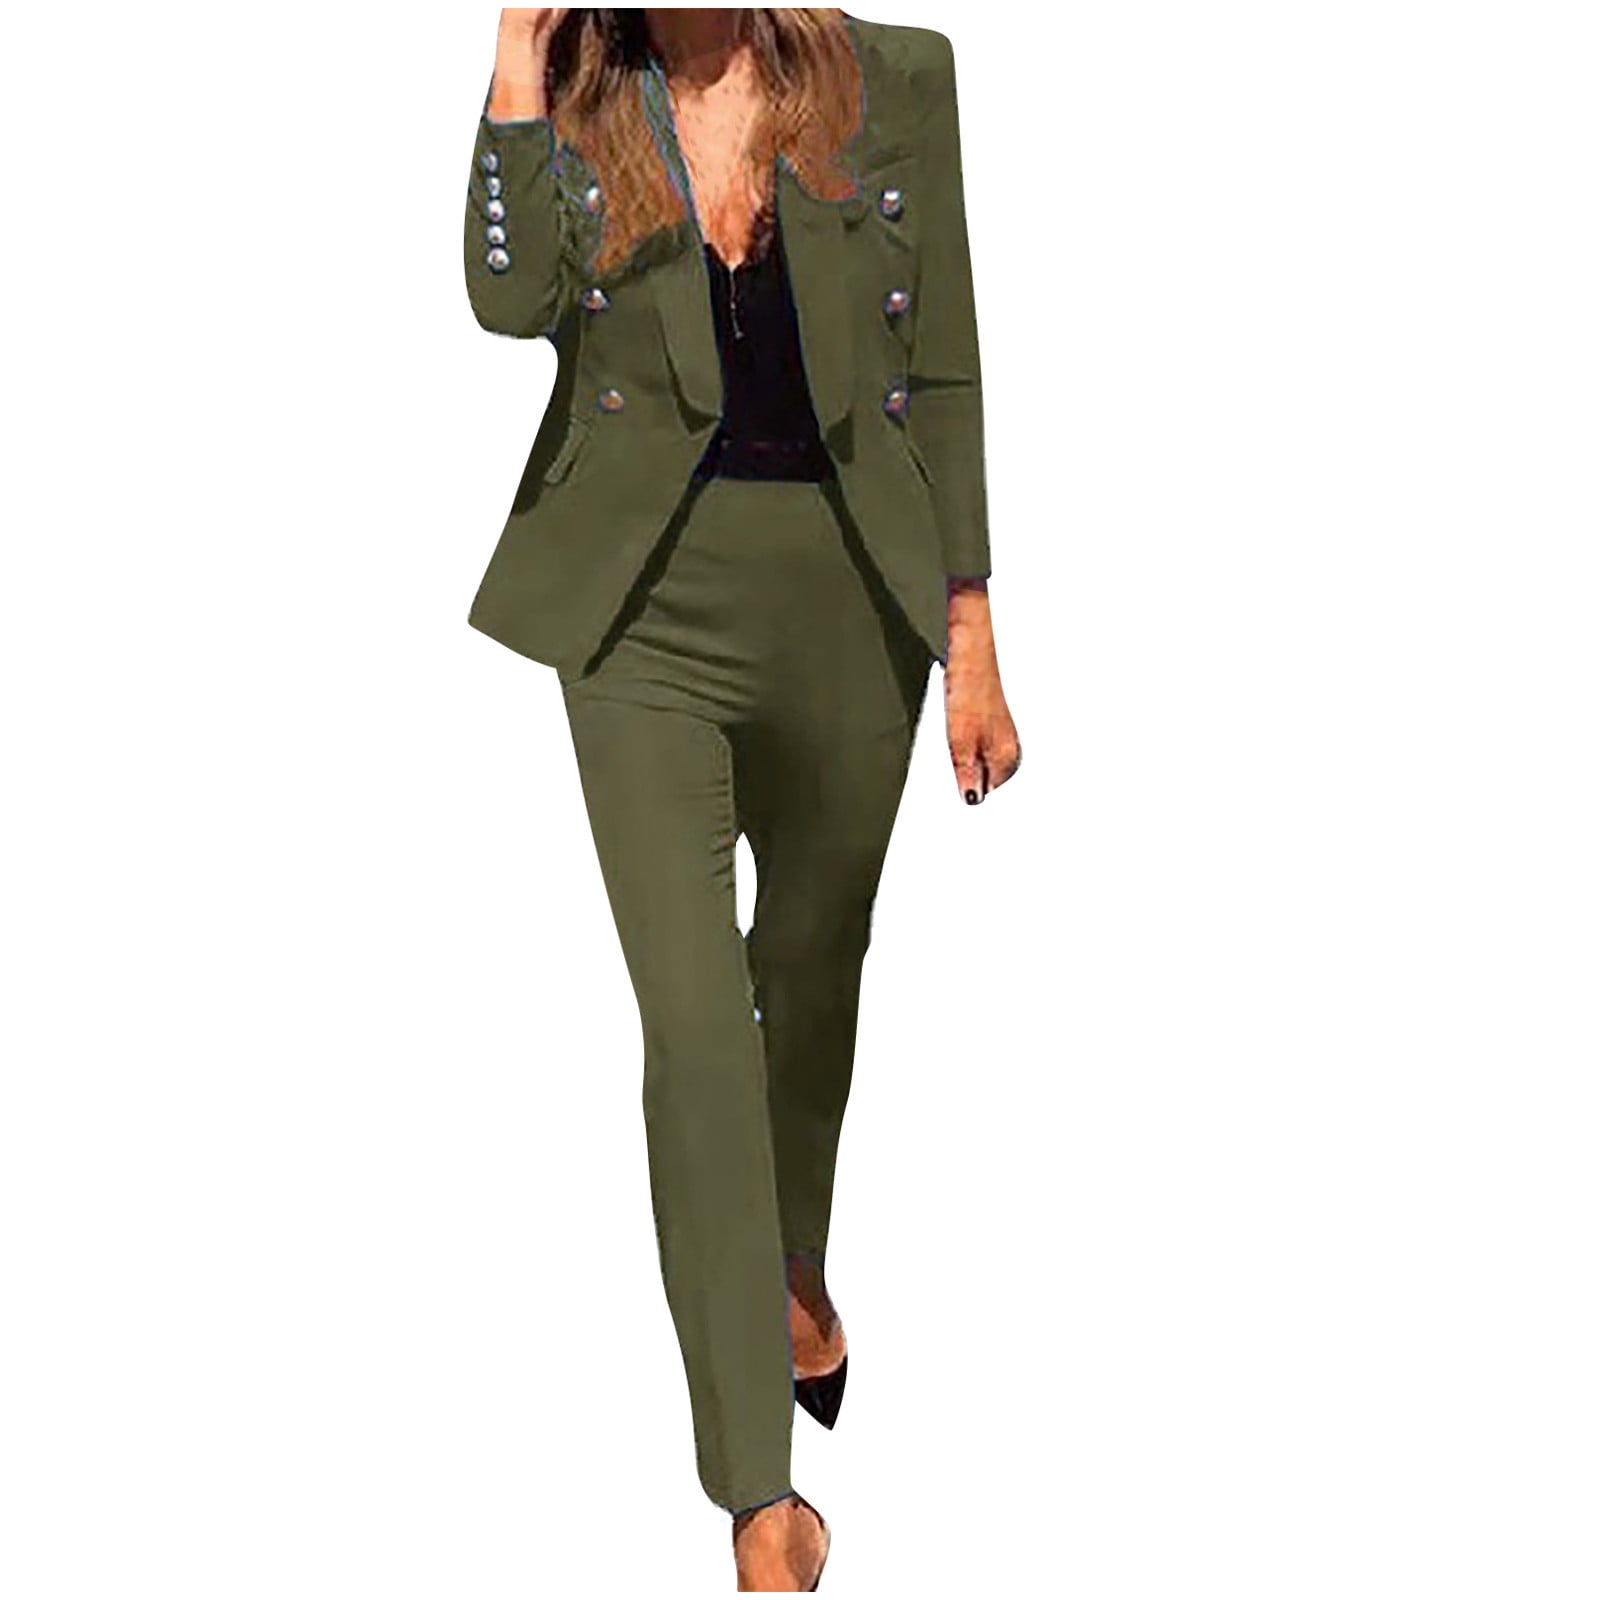 Ecqkame Women Blazers 2 Pieces Sets Formal Suits Clearance Women's Long  Sleeve Solid Suit Pants Casual Elegant Business Suit Sets Blue XXL 